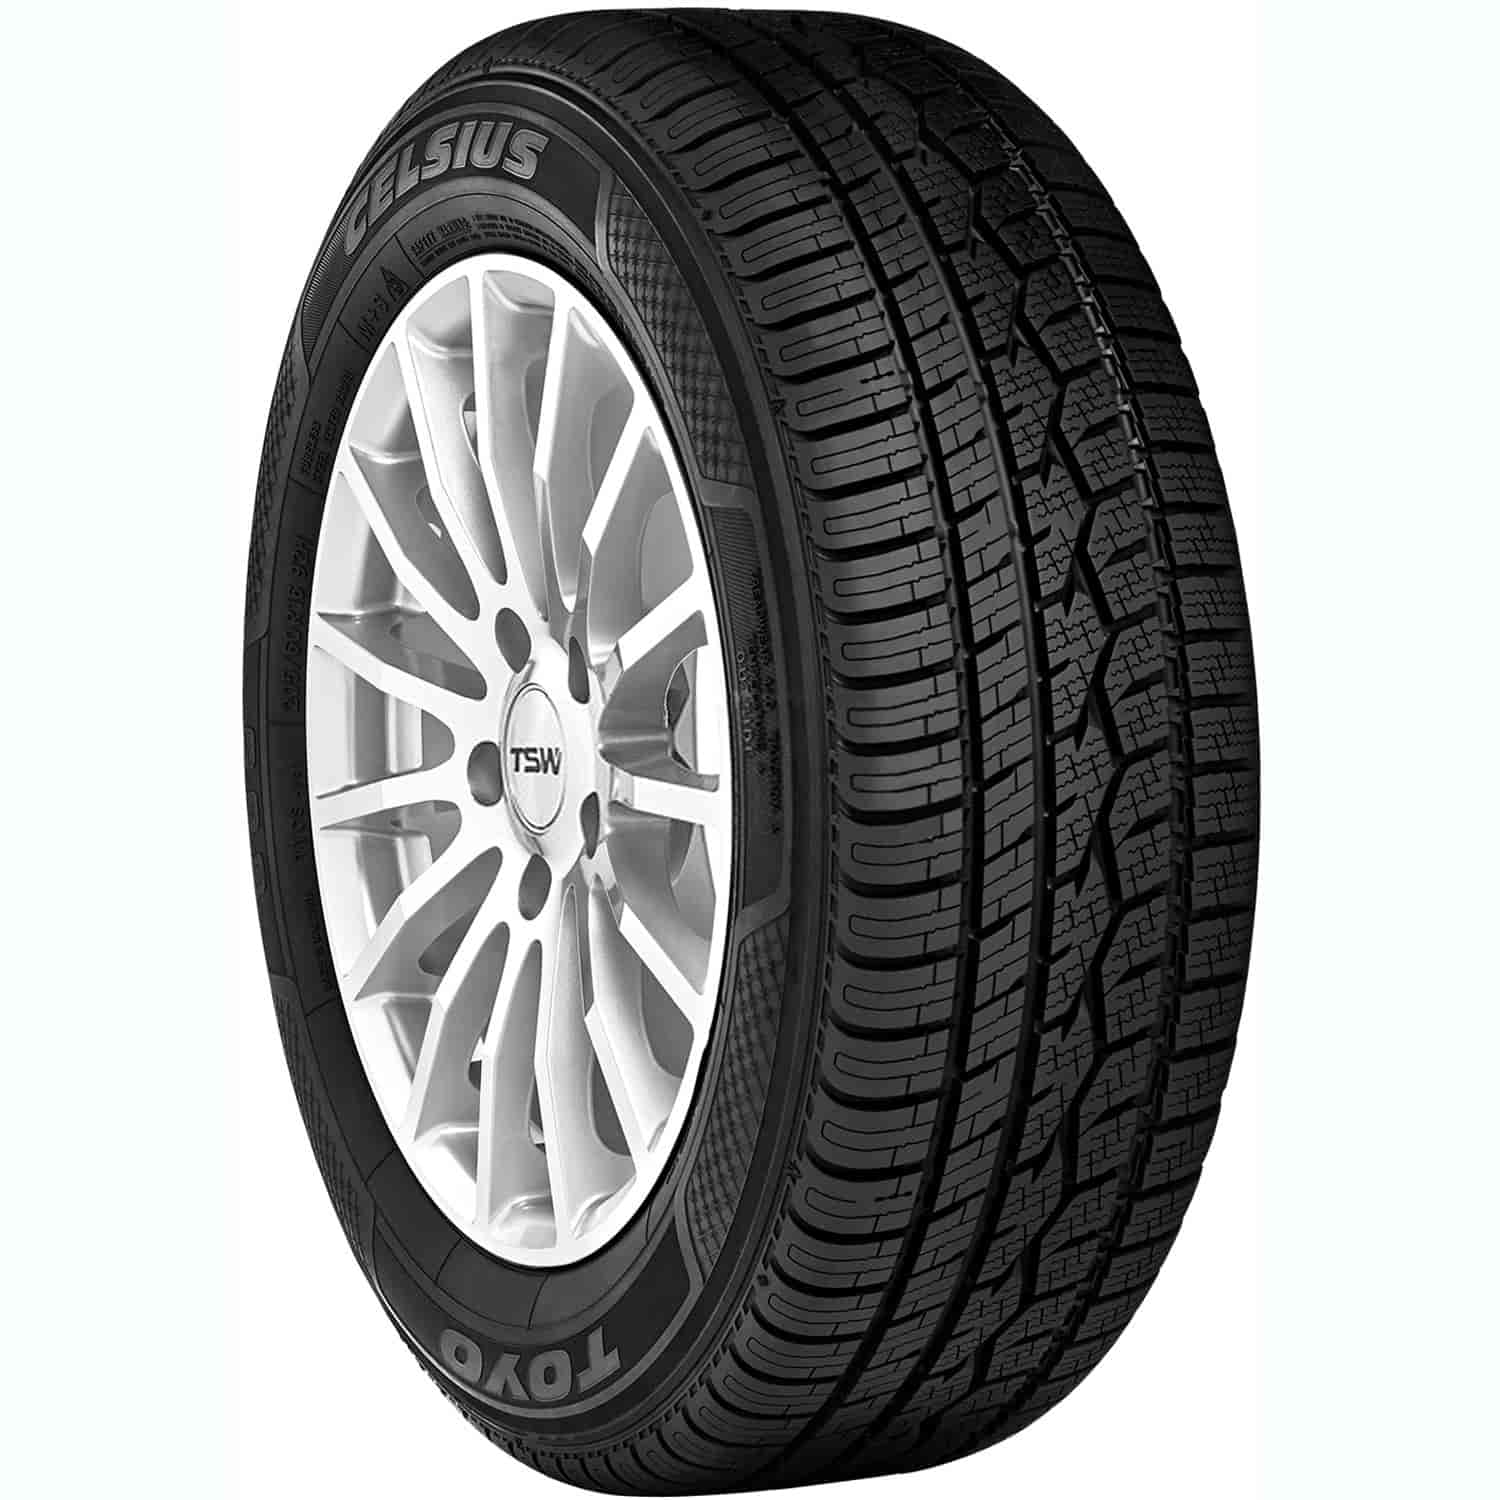 Celsius Passenger Car Tire 185/60R16